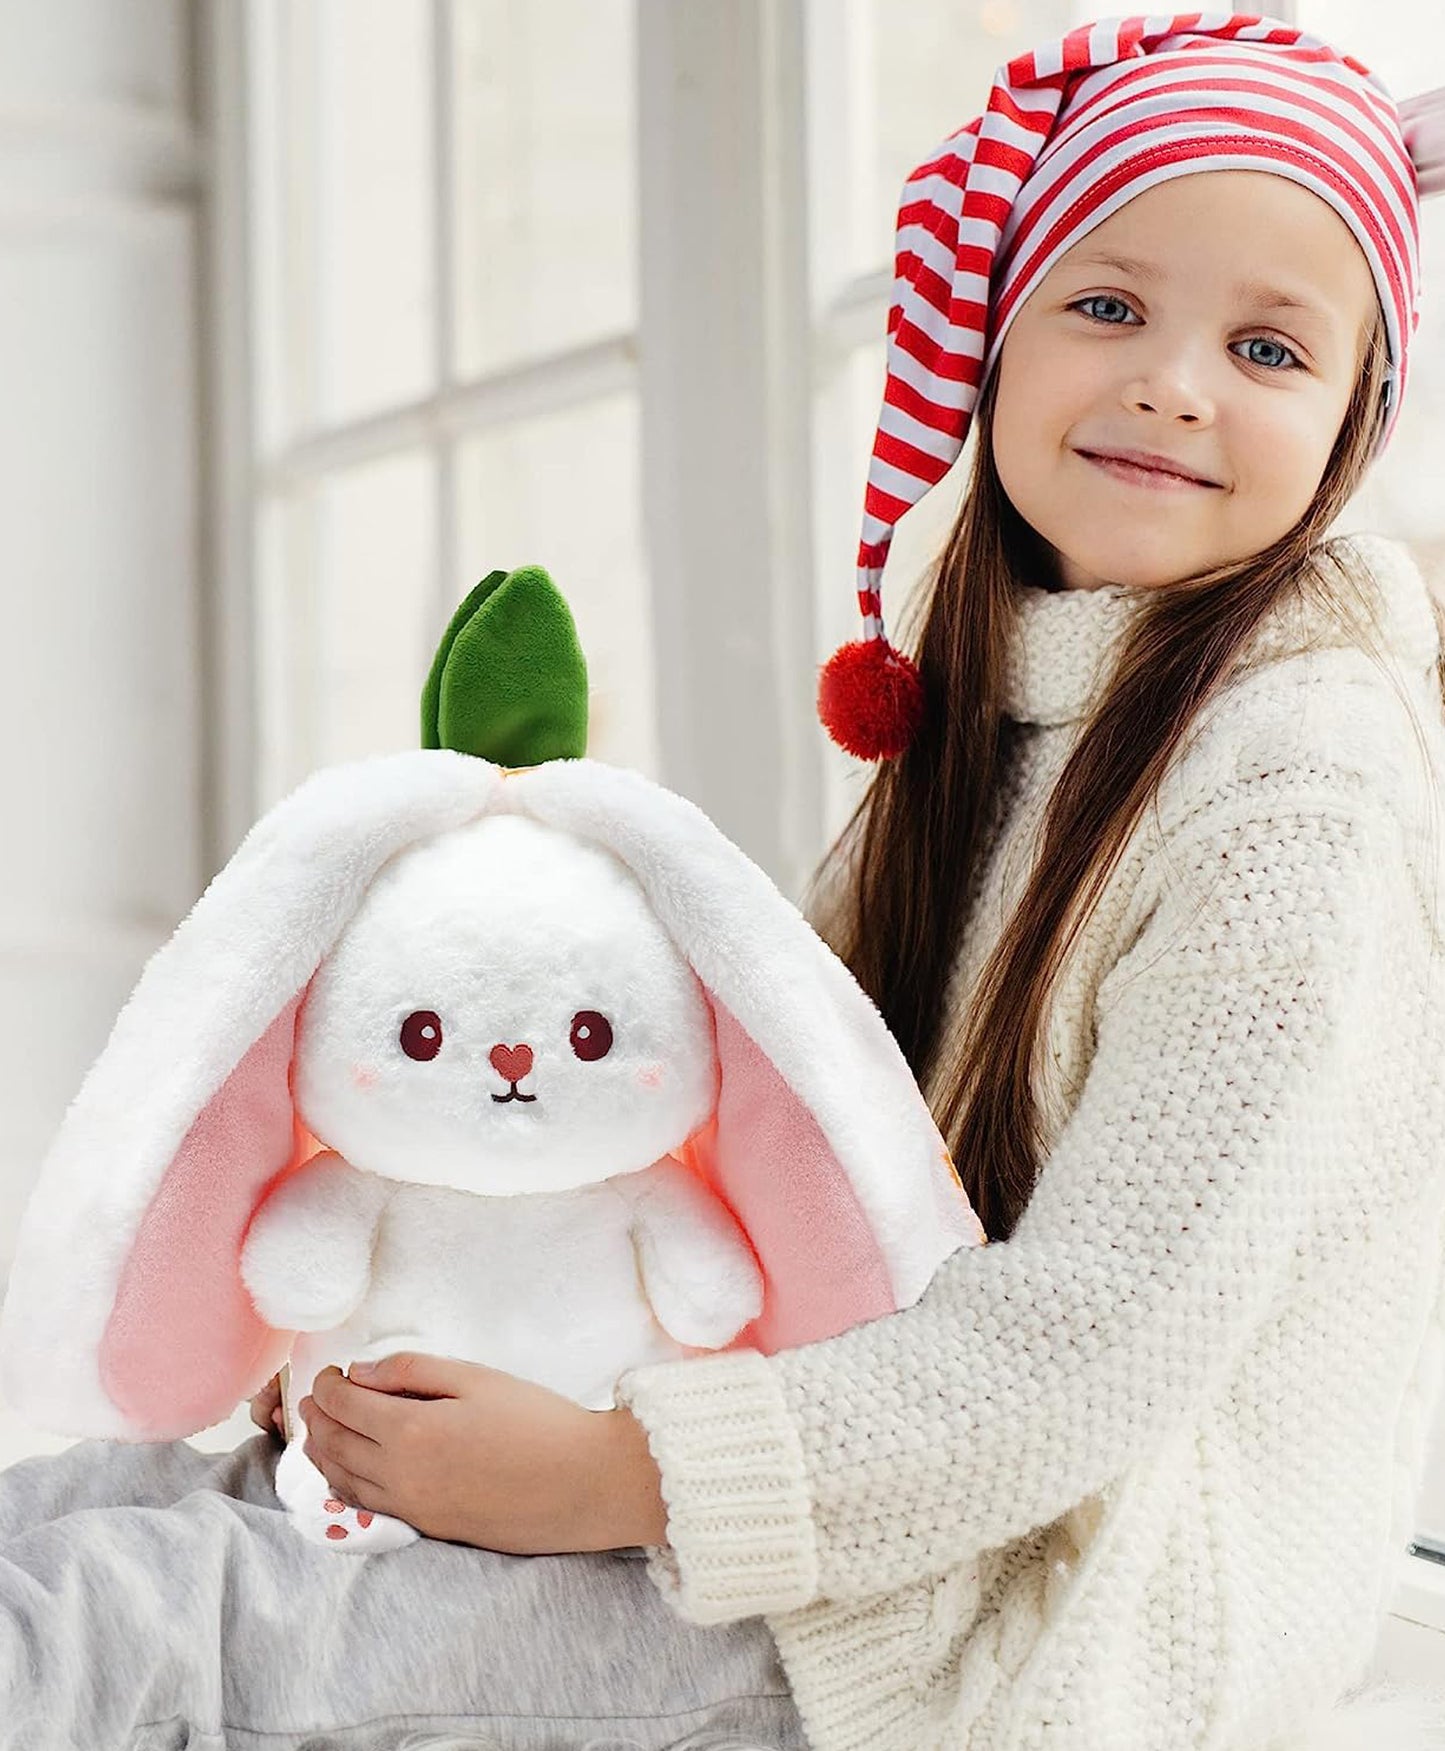 AVS Reversible Rabbit Soft Toy For Kids 20cm